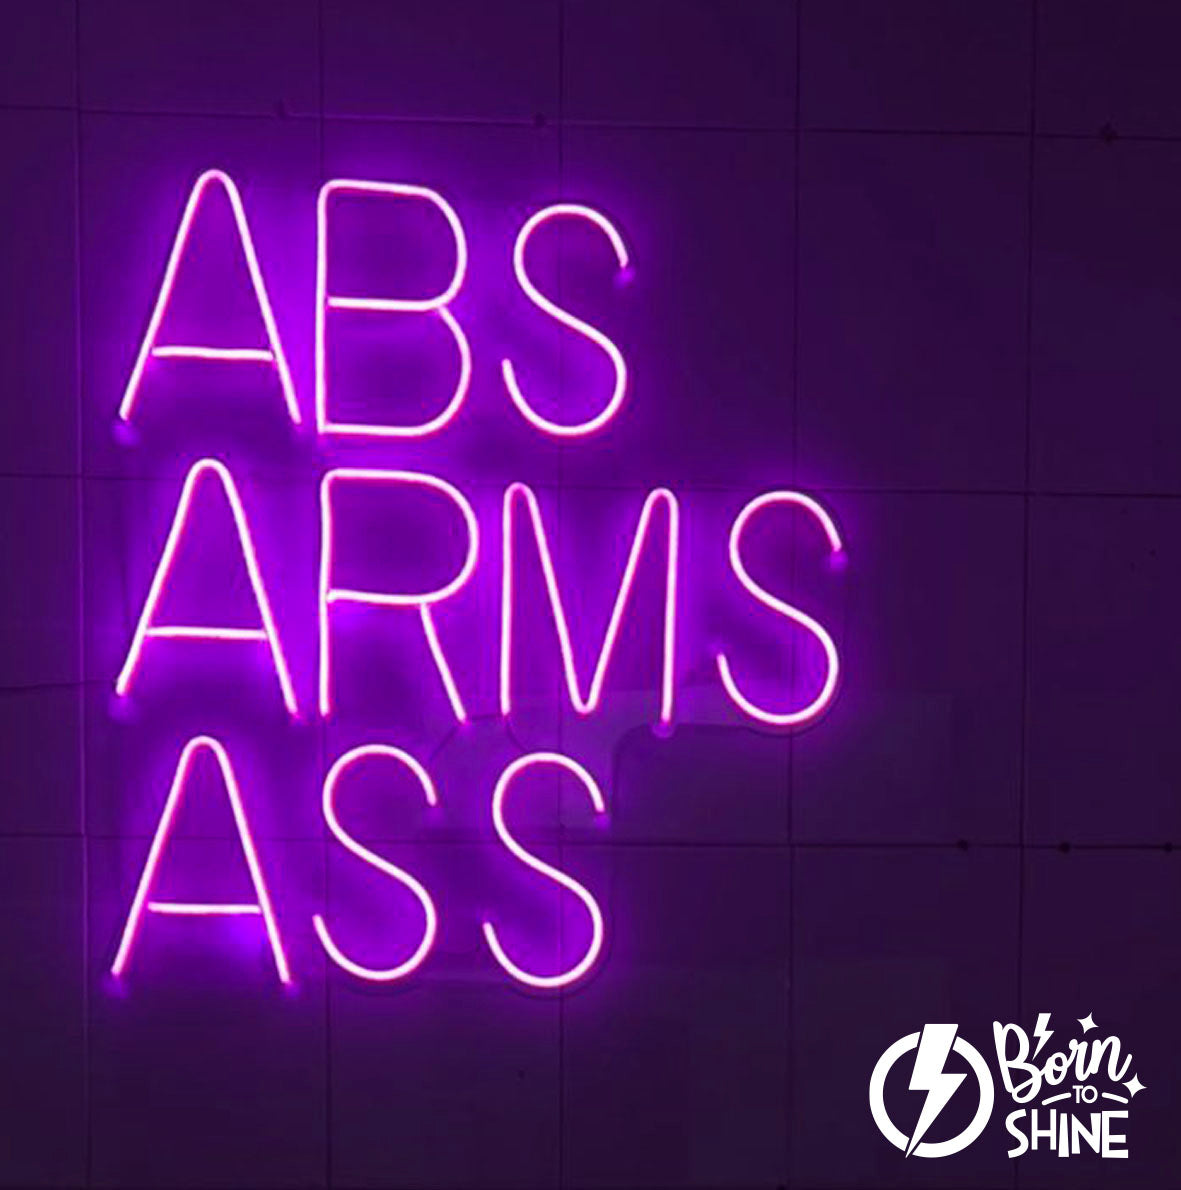 ABS ARMS ASS